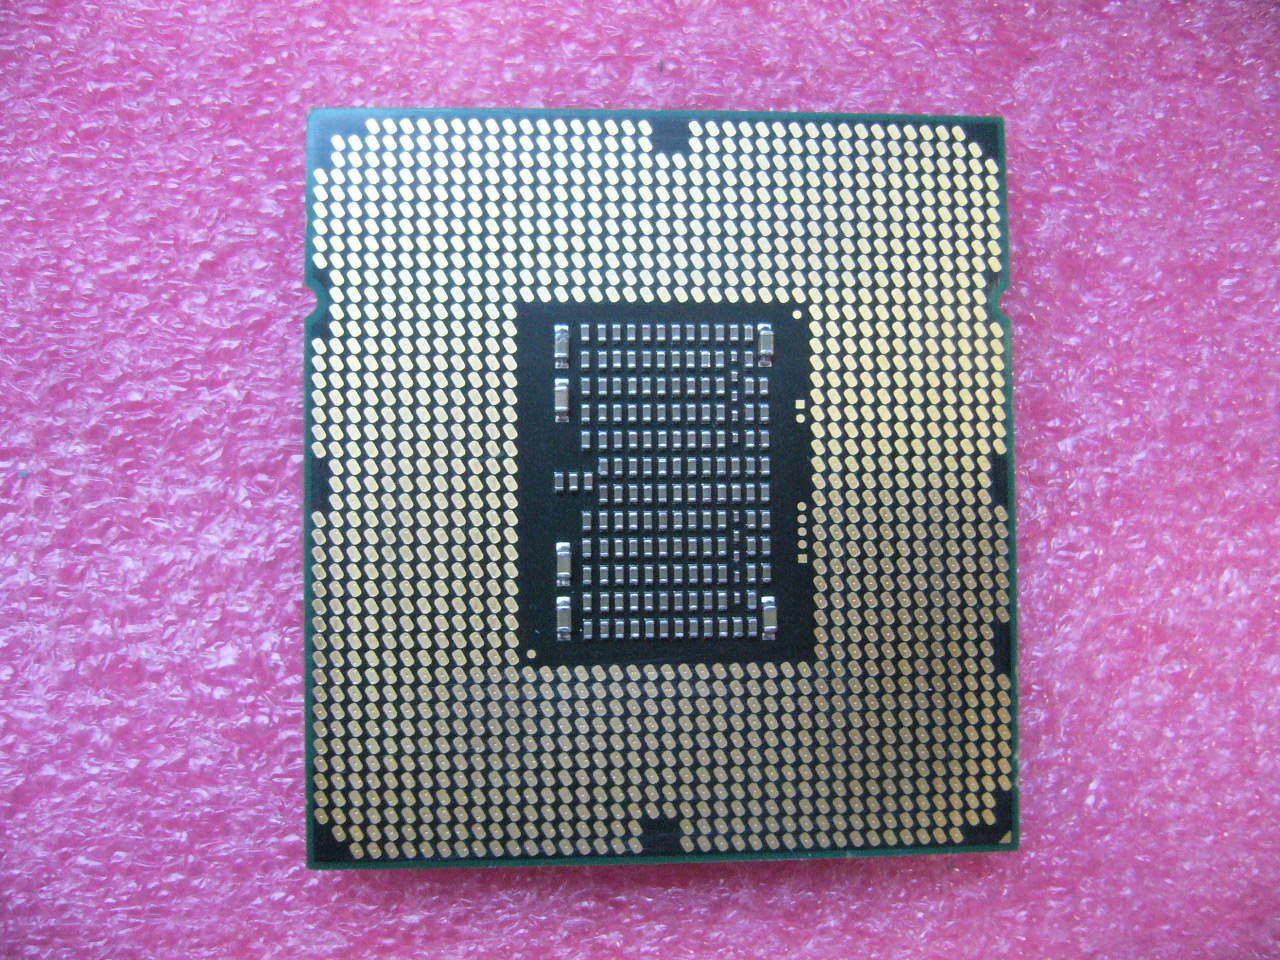 QTY 1x INTEL Six-Cores Xeon CPU E5645 2.40GHZ/12MB LGA1366 SLBWZ - zum Schließen ins Bild klicken